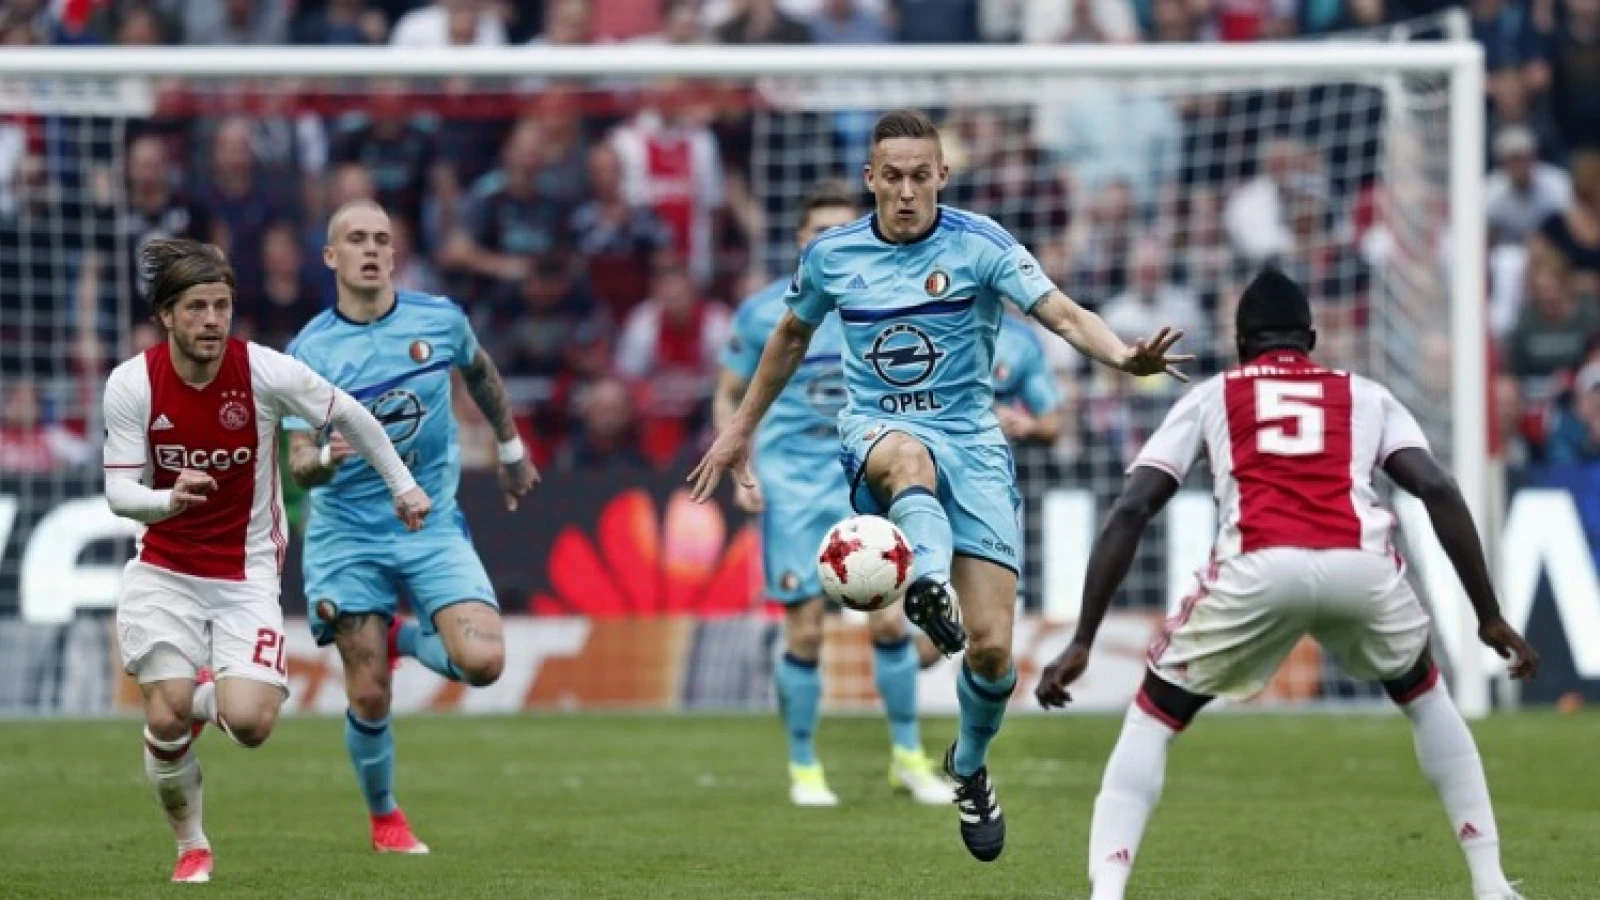 Nederlaag tegen Ajax lijkt goed teken voor Feyenoord